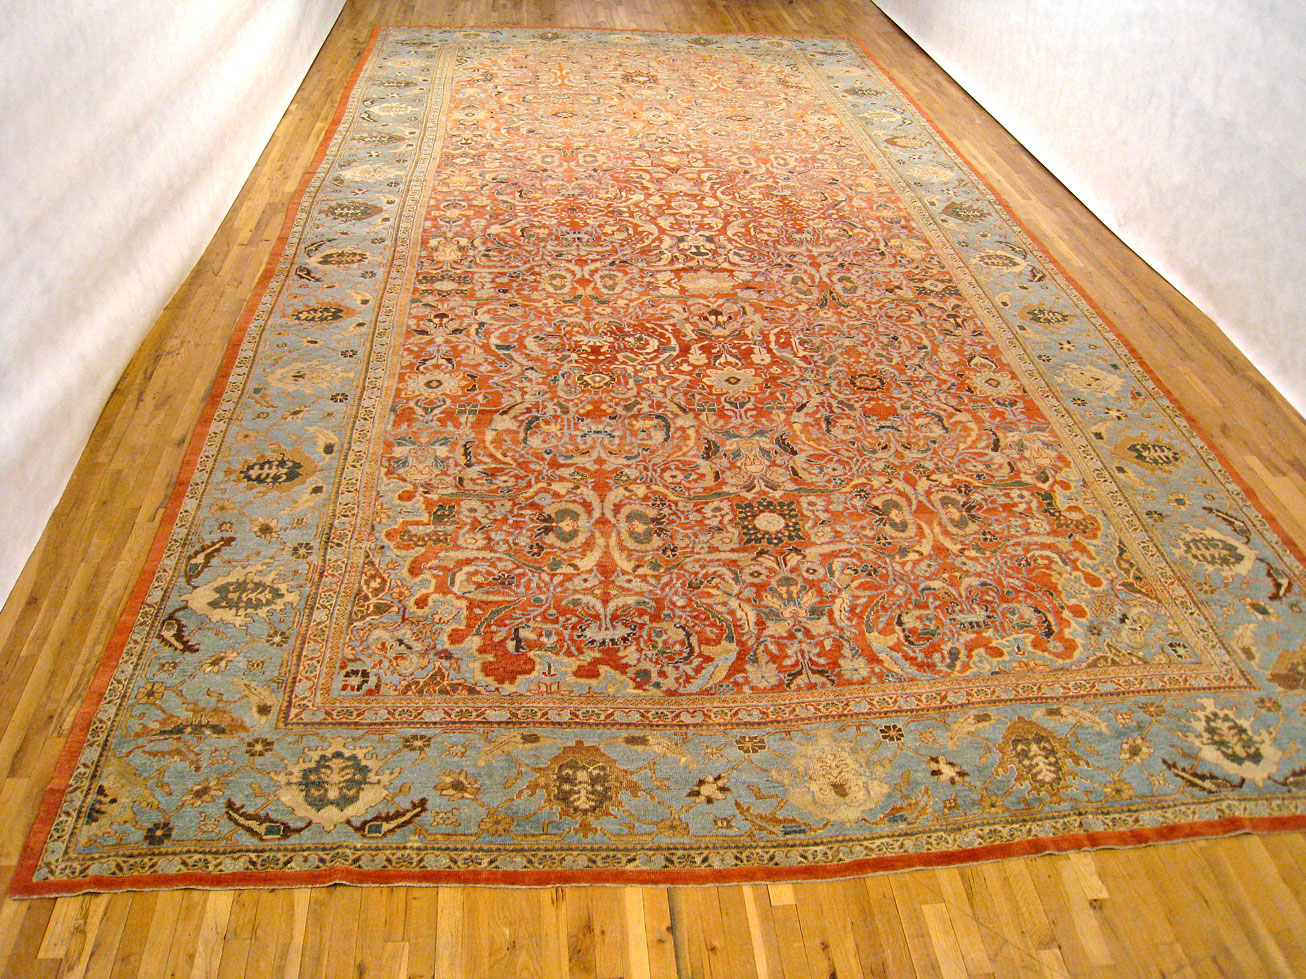 Antique mahal Carpet - # 2871